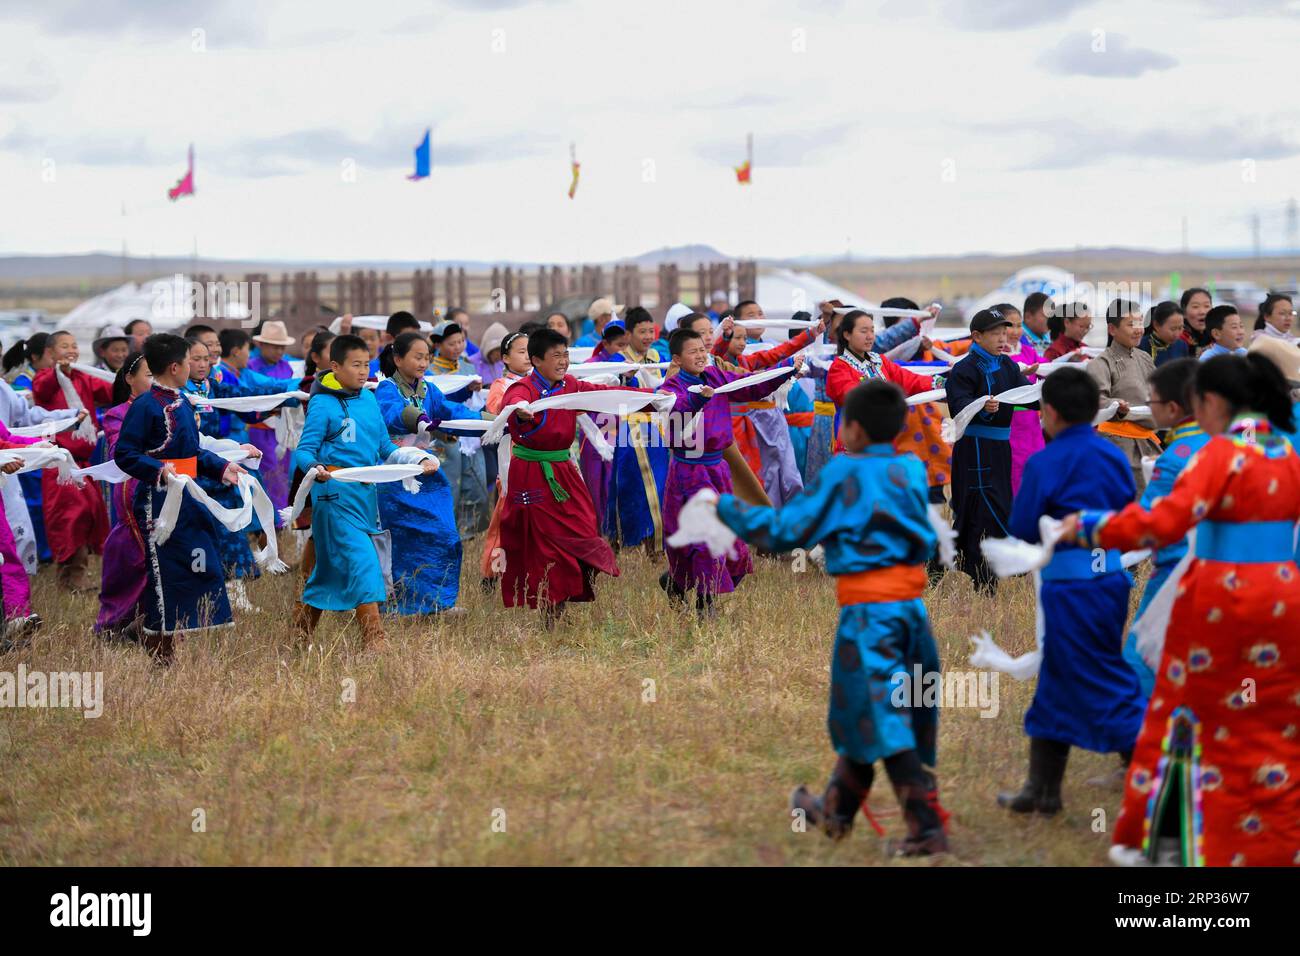 (180922) -- XILINGOL, 22 settembre 2018 -- bambini del gruppo etnico mongolo Hada, pezzi di seta utilizzati come regali di saluto, durante una fiera Nadam a Xilingol, regione autonoma della Mongolia interna della Cina settentrionale, 22 settembre 2018. Nadam è una festa tradizionale mongola in cui le persone celebrano i raccolti e pregano per la buona fortuna. Durante l'evento si svolgono attività come tiro con l'arco, lotta, corse di cavalli e spettacoli folcloristici. )(xmc) CHINA-INNER MONGOLIA-XILINGOL-NADAM FAIR (CN) PengxYuan PUBLICATIONxNOTxINxCHN Foto Stock